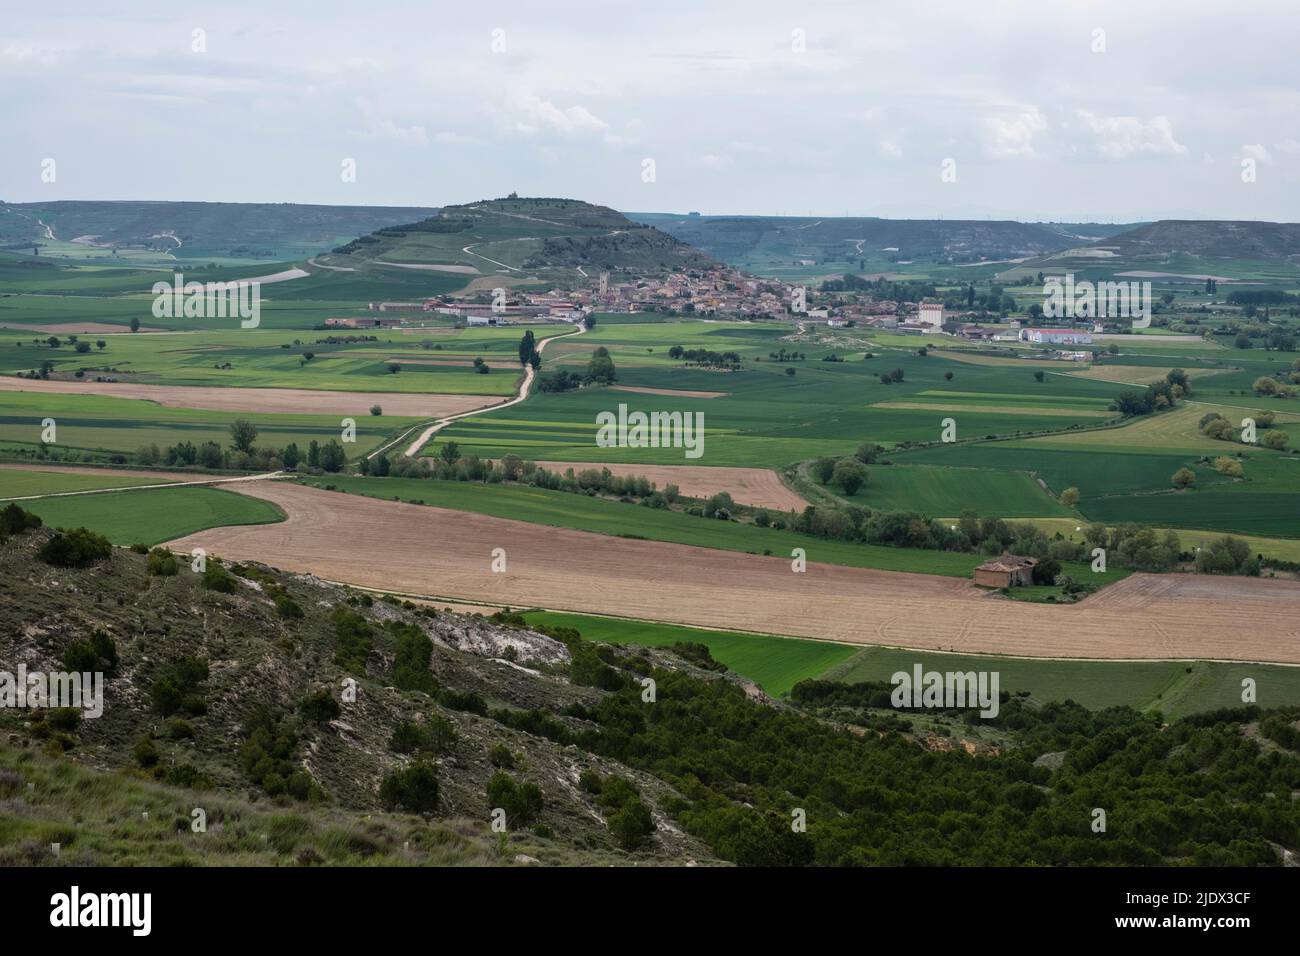 España, Castilla y León, mirando hacia Castrojeriz desde el Camino de Santiago, pasando por tierras de labranza en primer plano. Foto de stock